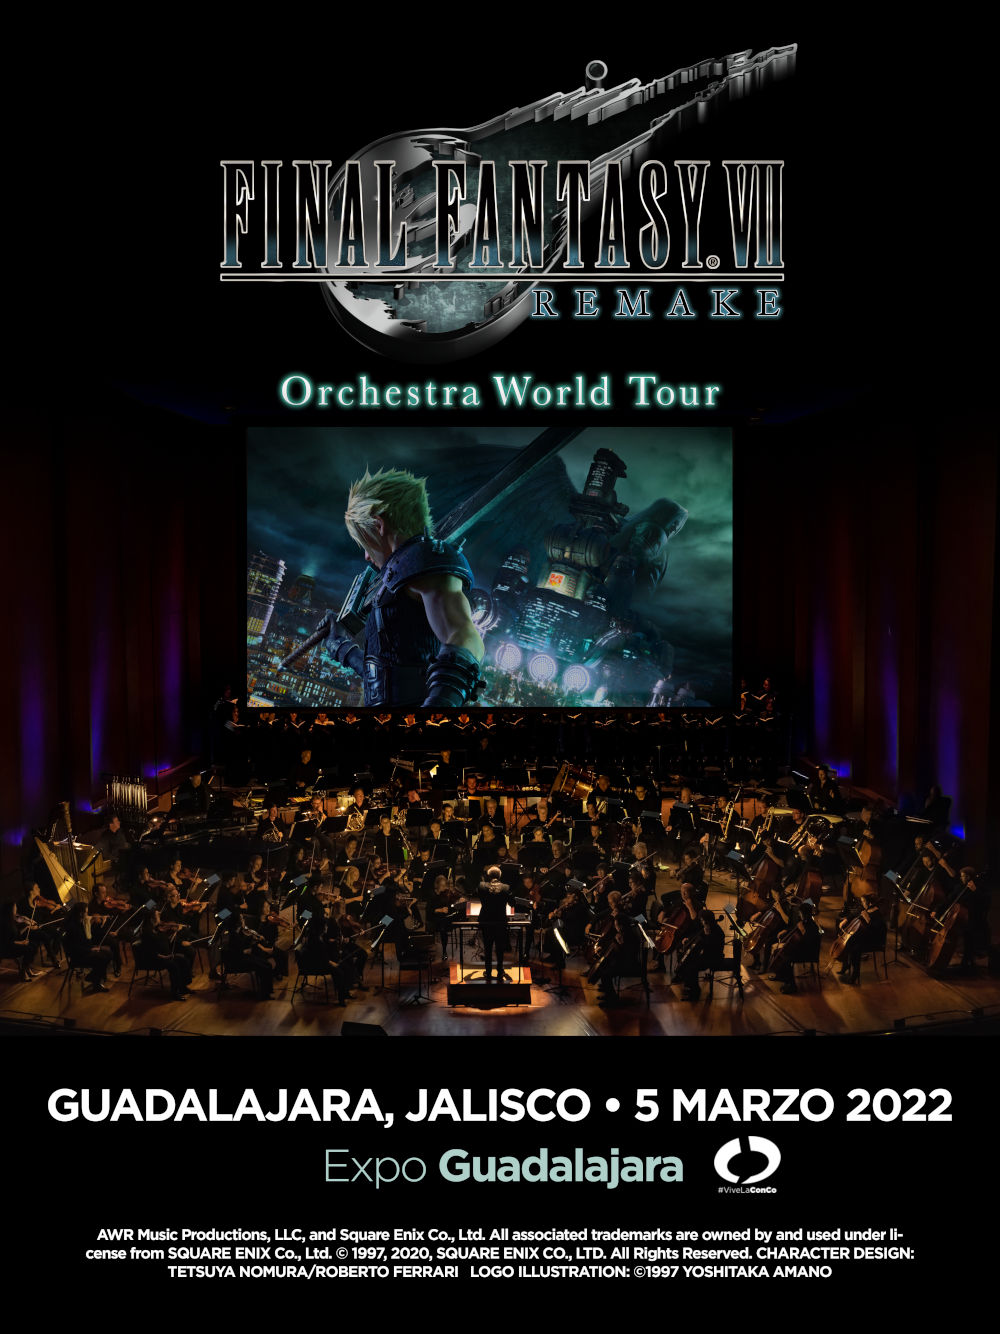 Final Fantasy VII Remake Orchesta World Tour: Fechas y precios para México